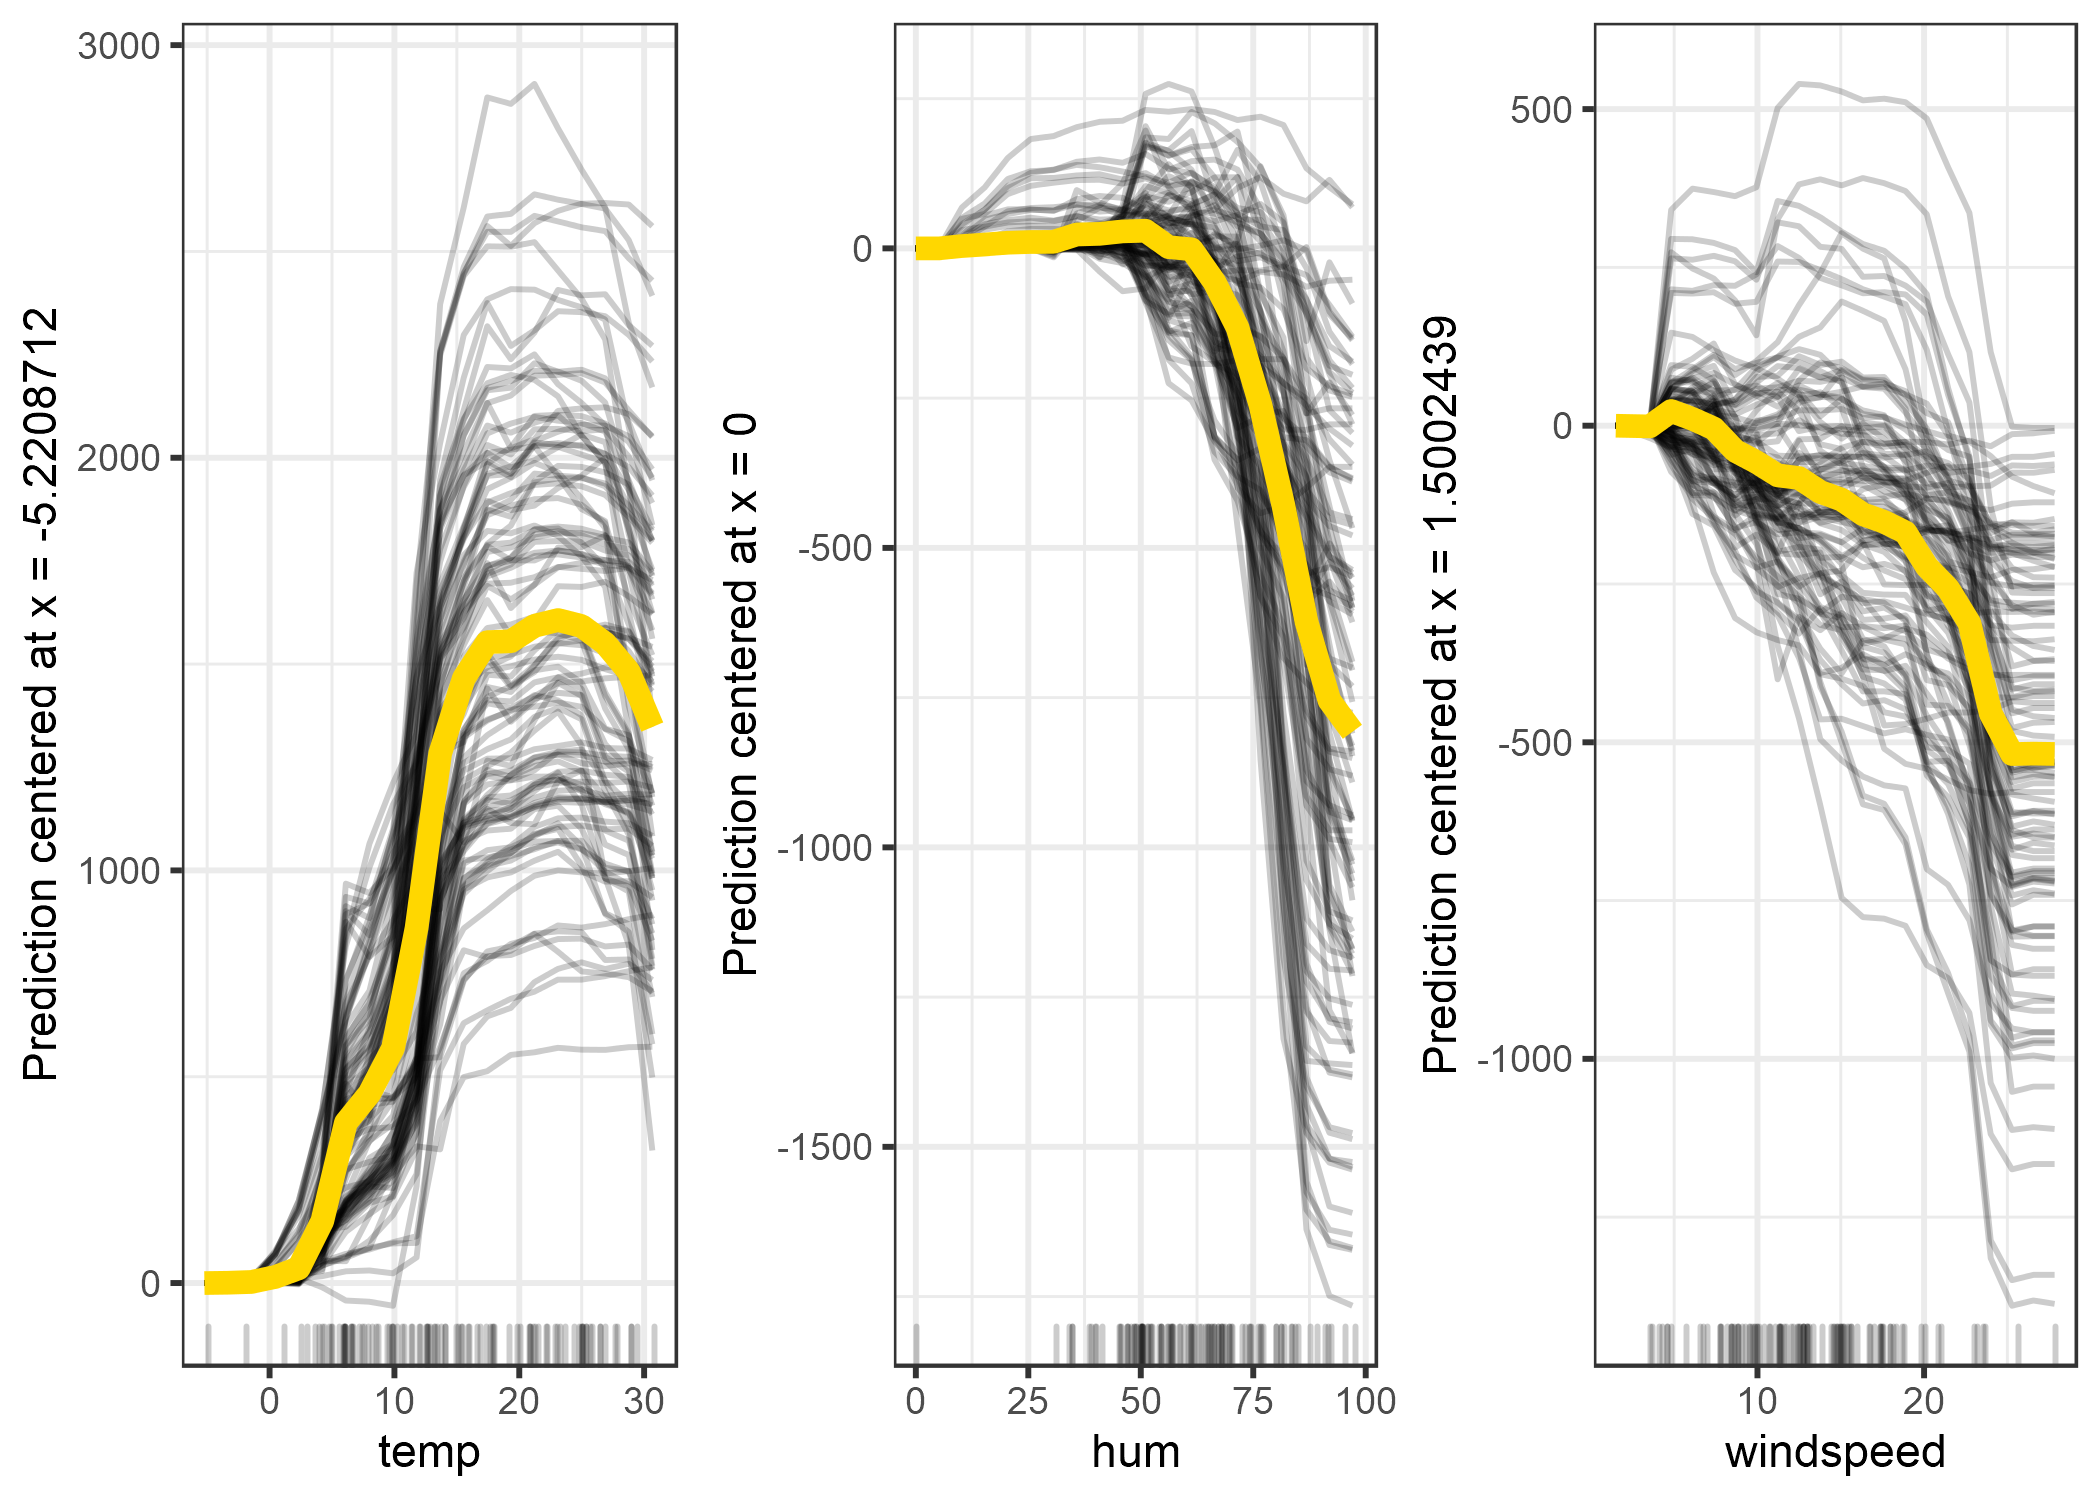 Gráfico ICE centrado ICE del número previsto de bicicletas por condición climática. Las líneas muestran la diferencia en la predicción en comparación con la predicción con el valor de la característica respectiva en su mínimo observado.